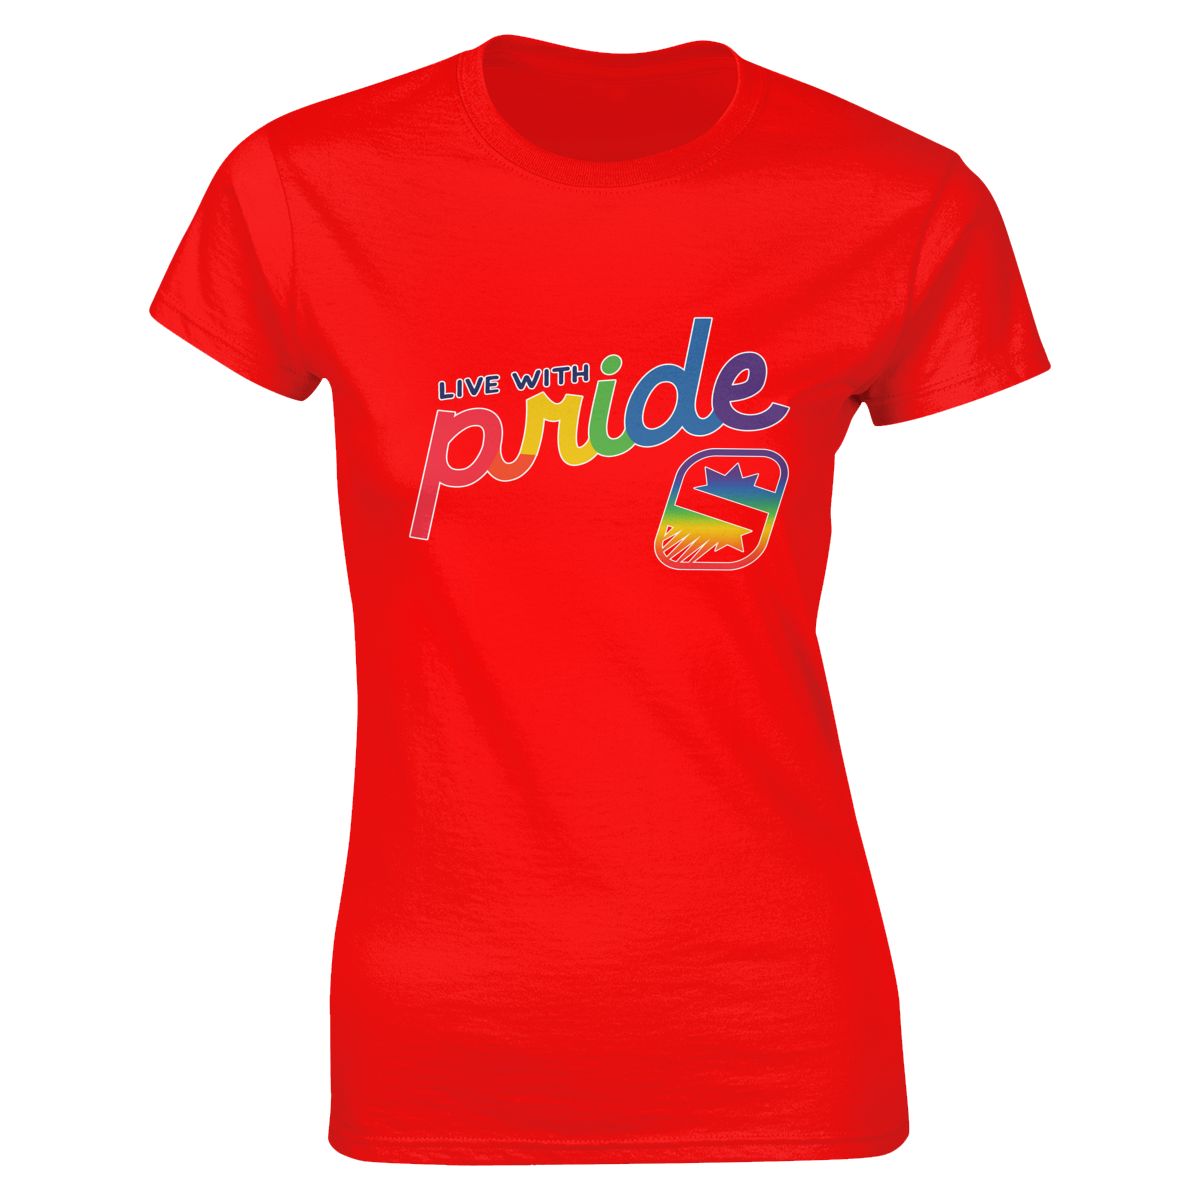 Phoenix Suns Live With Pride Women's Soft Cotton T-Shirt